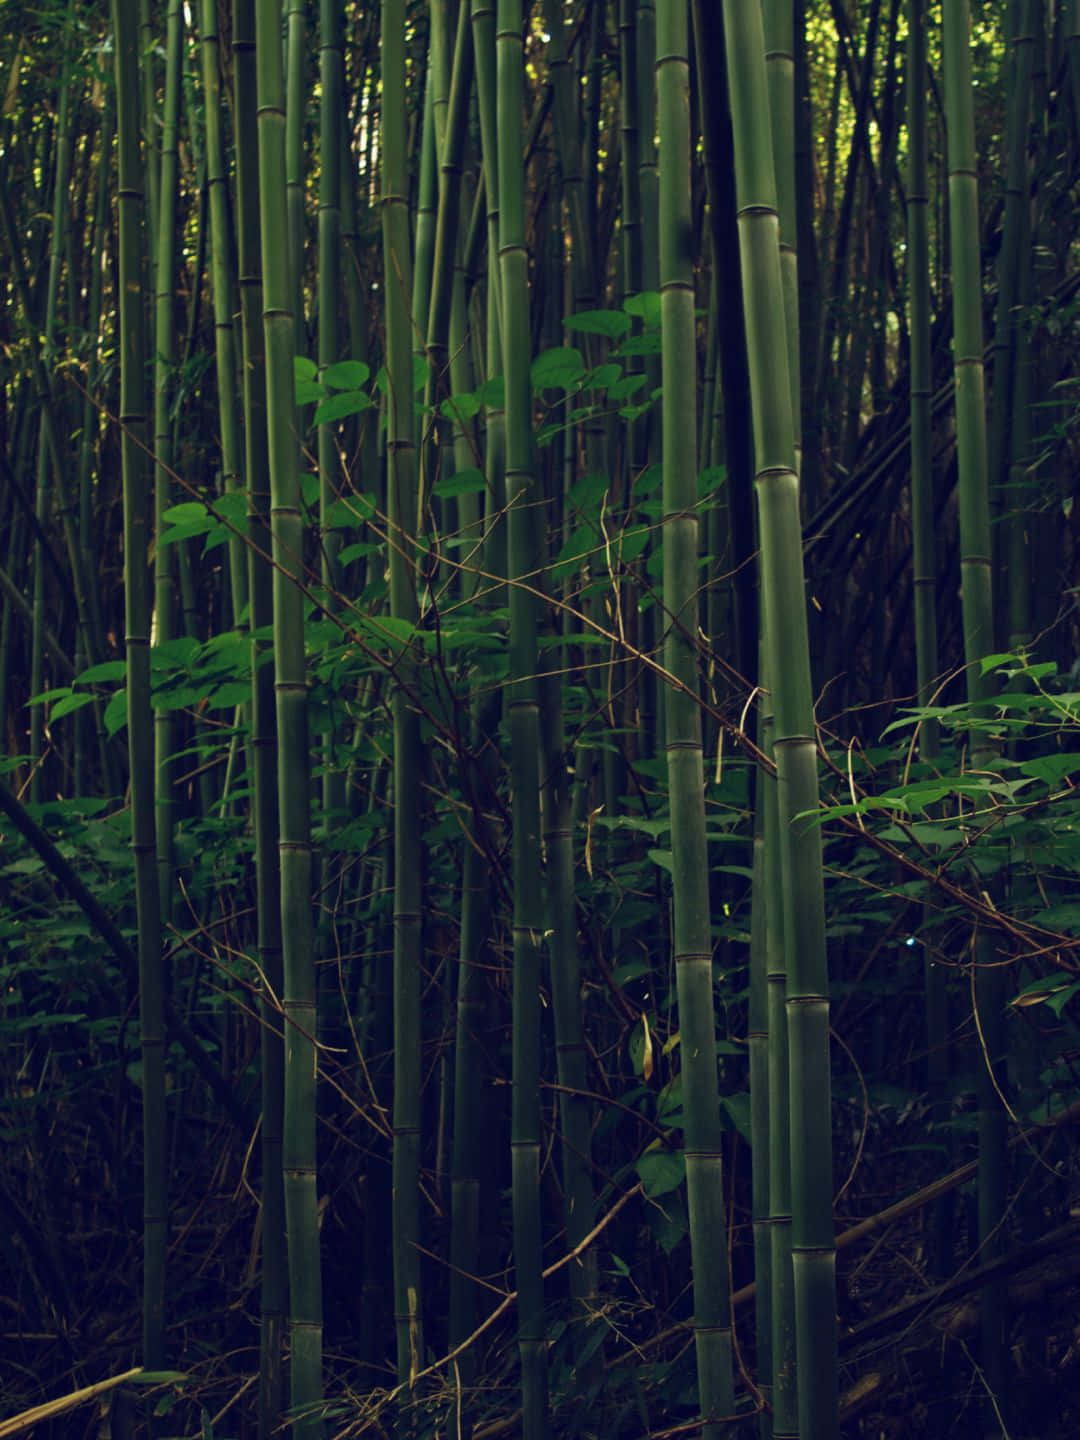 1440p Bamboo Background Bamboo Trees Dark Surroundings